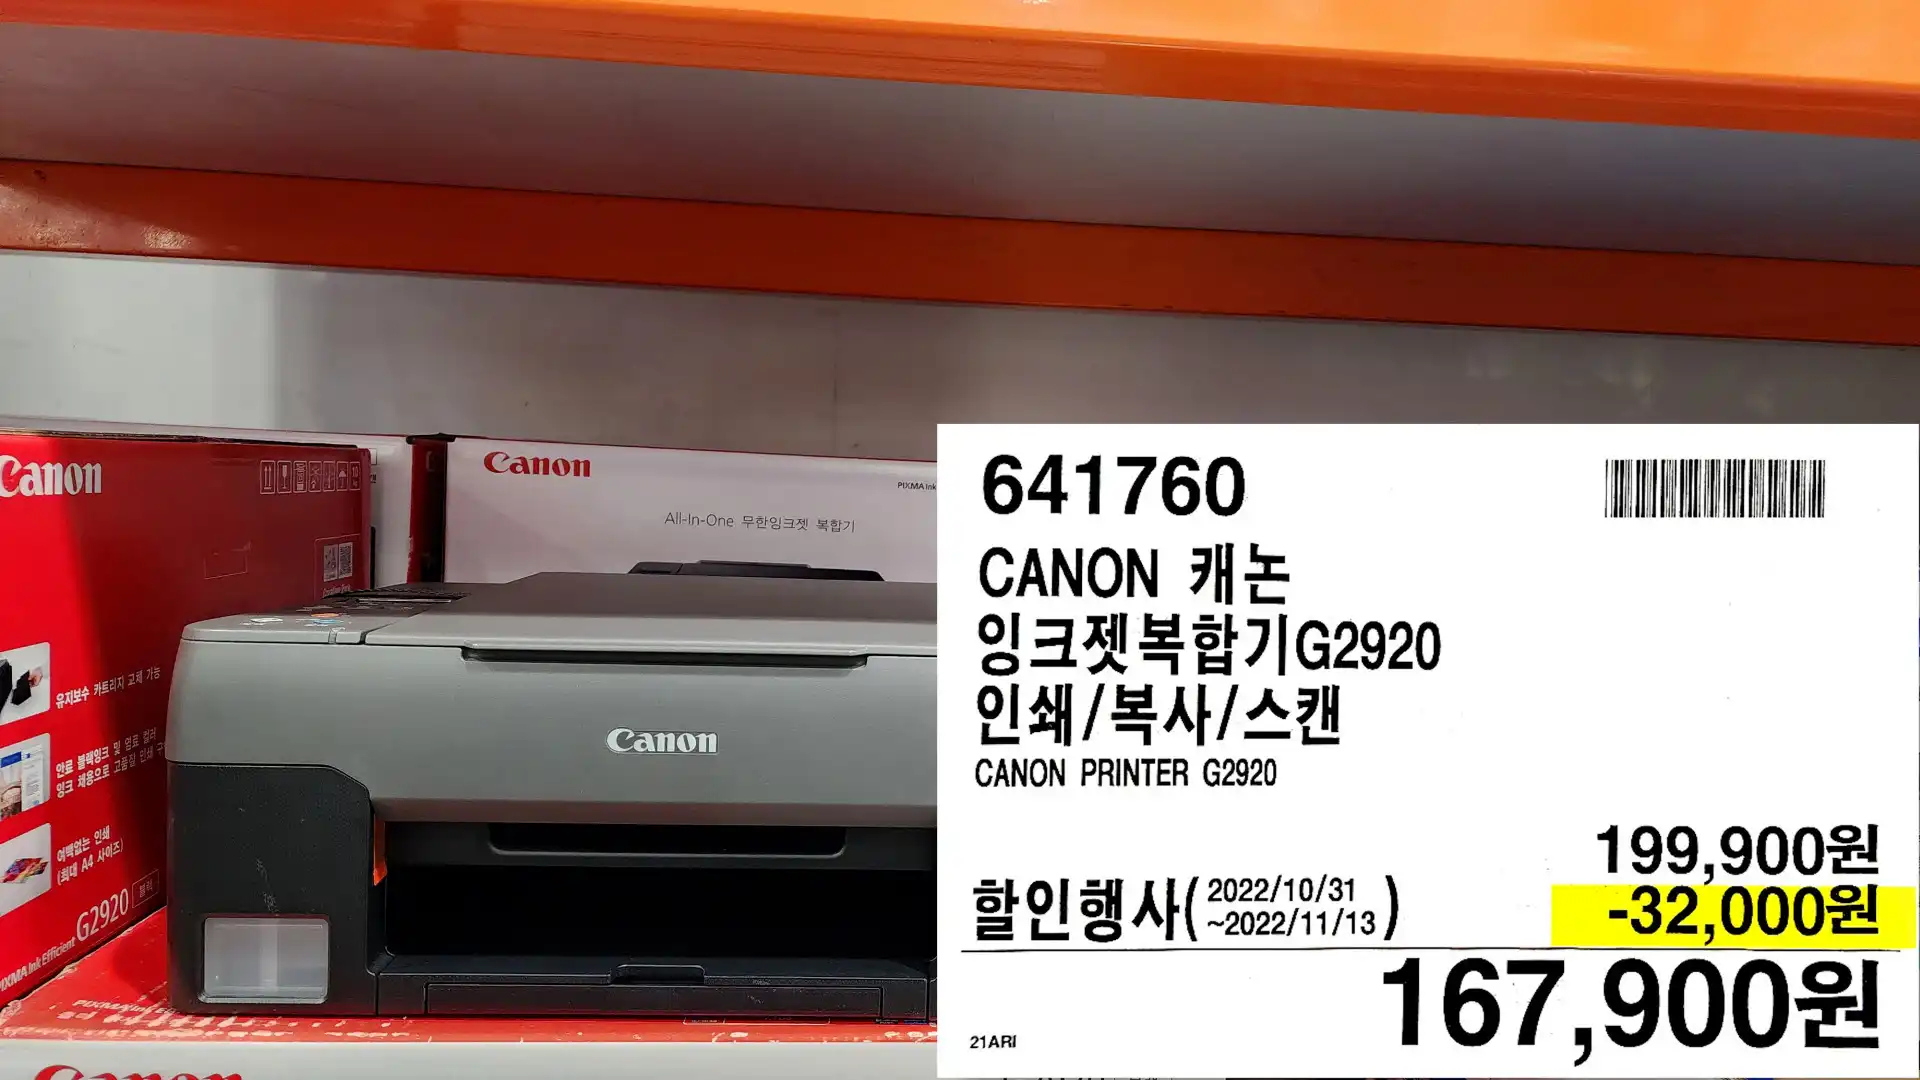 CANON 캐논
잉크젯복합기G2920
인쇄/복사/스캔
CANON PRINTER G2920
167,900원